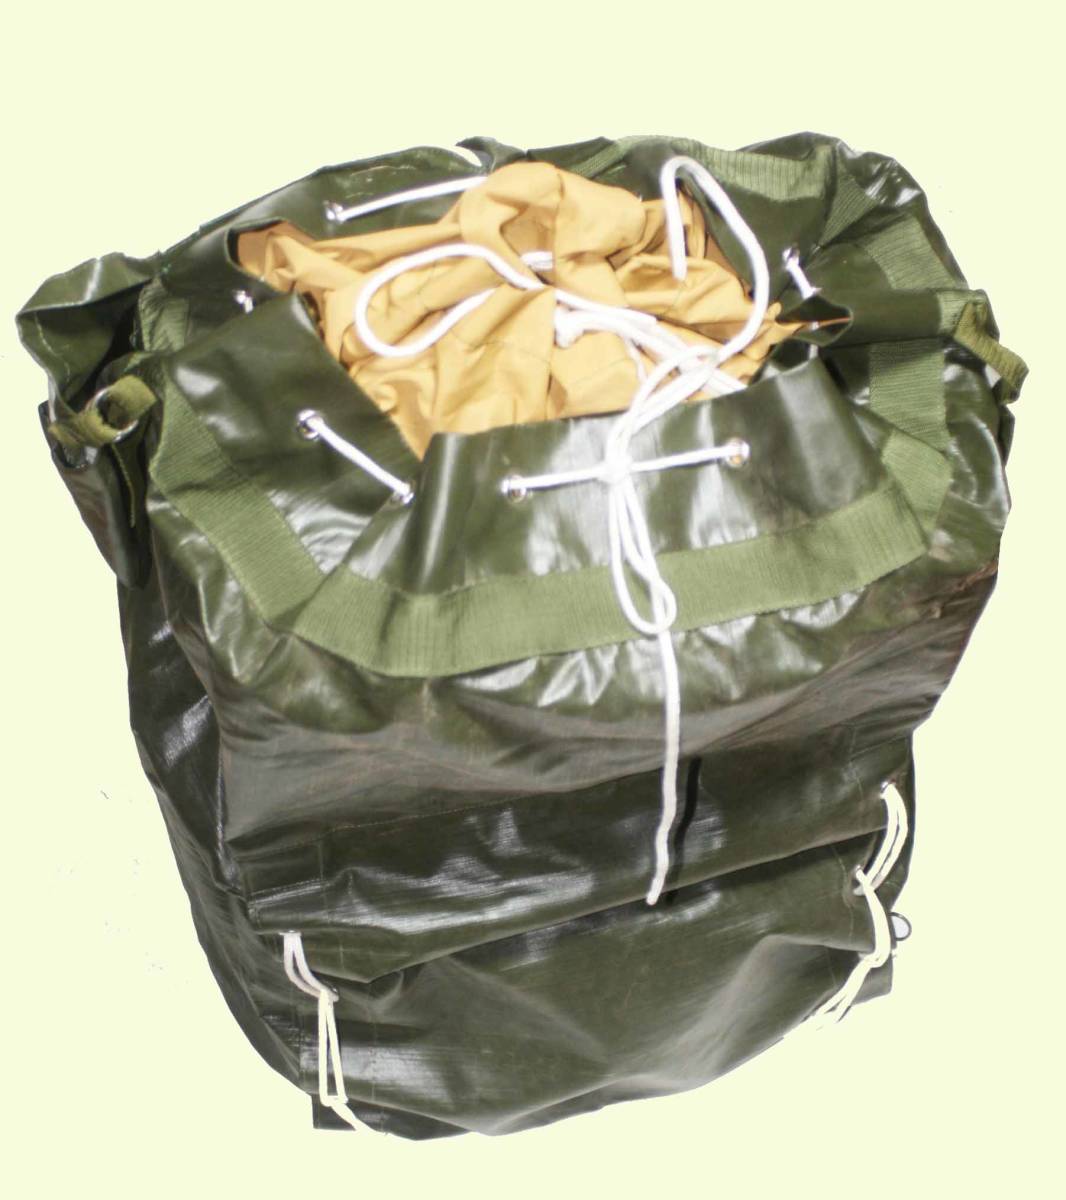  Чехия армия *OD цвет * винил * водонепроницаемый * сумка / армия освобождение б/у оригинал товар 